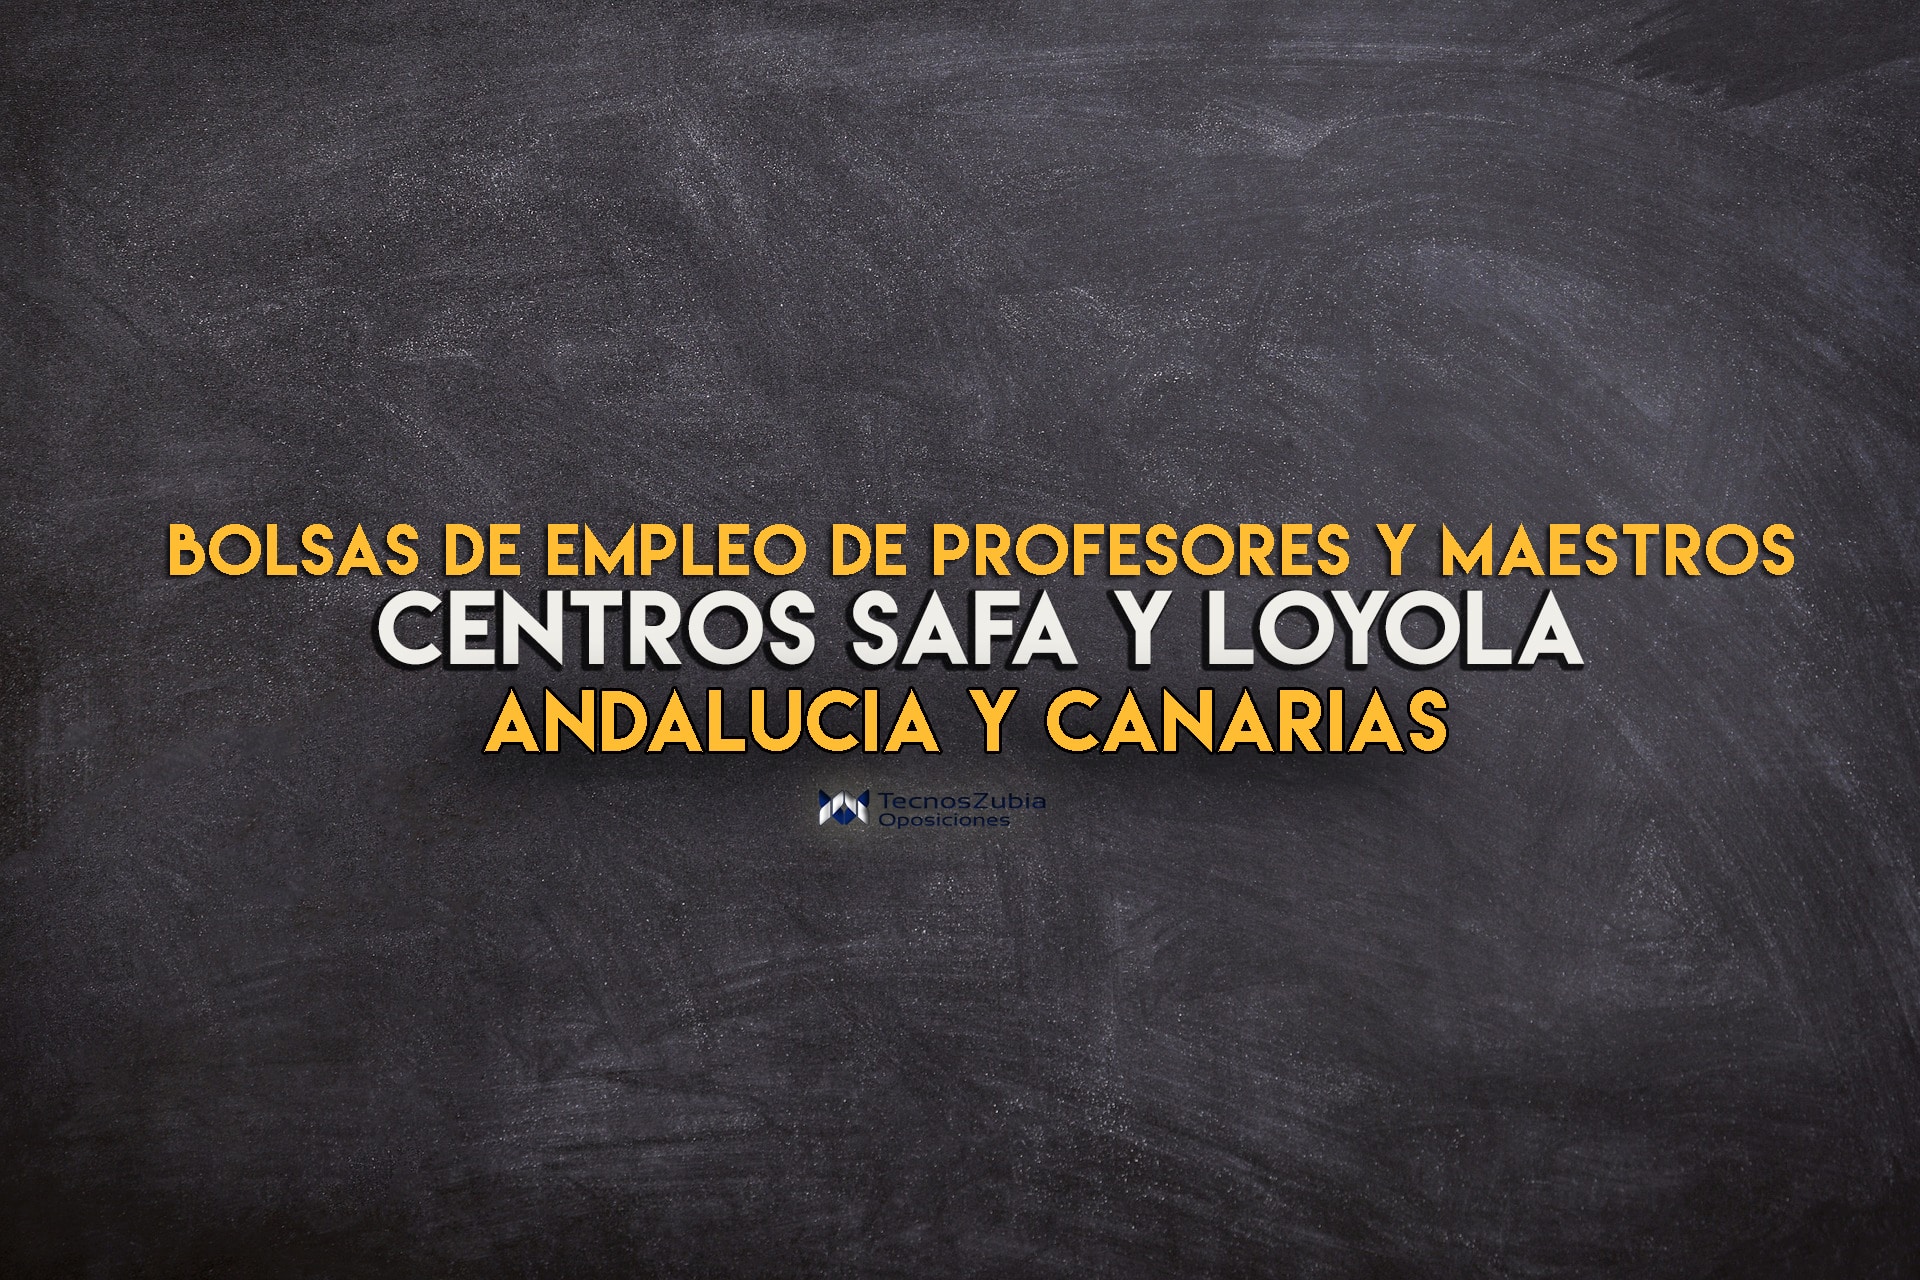 Andalucía e Islas Canarias: abiertas bolsas de empleo Profesores y Maestros para Centros SAFA y Loyola - TecnosZubia